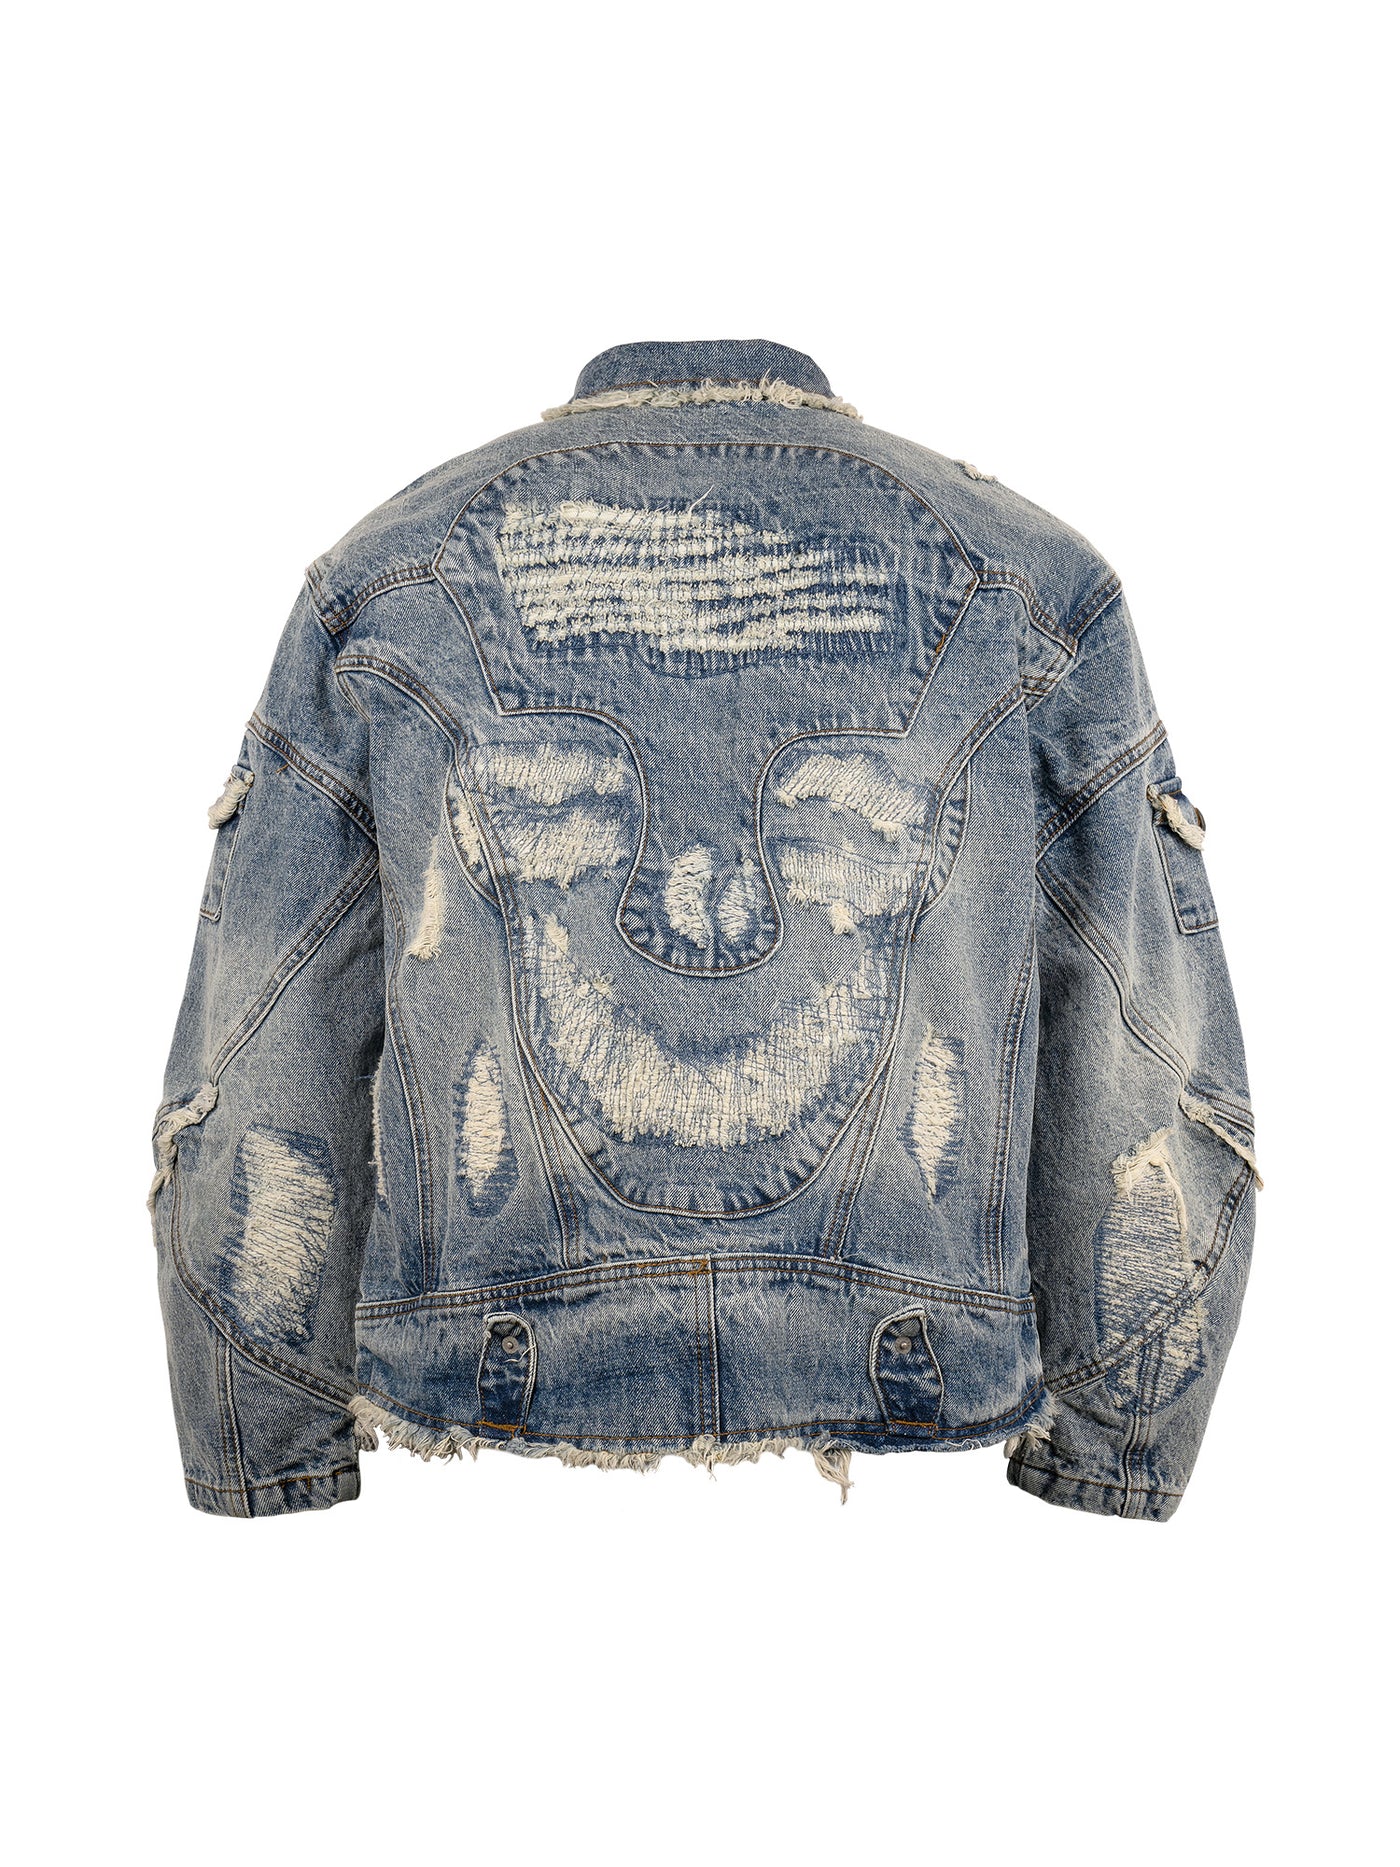 EVILKNIGHT(EK) Washed Heavy Embroidery Destroyed Patchwork Denim Jacket